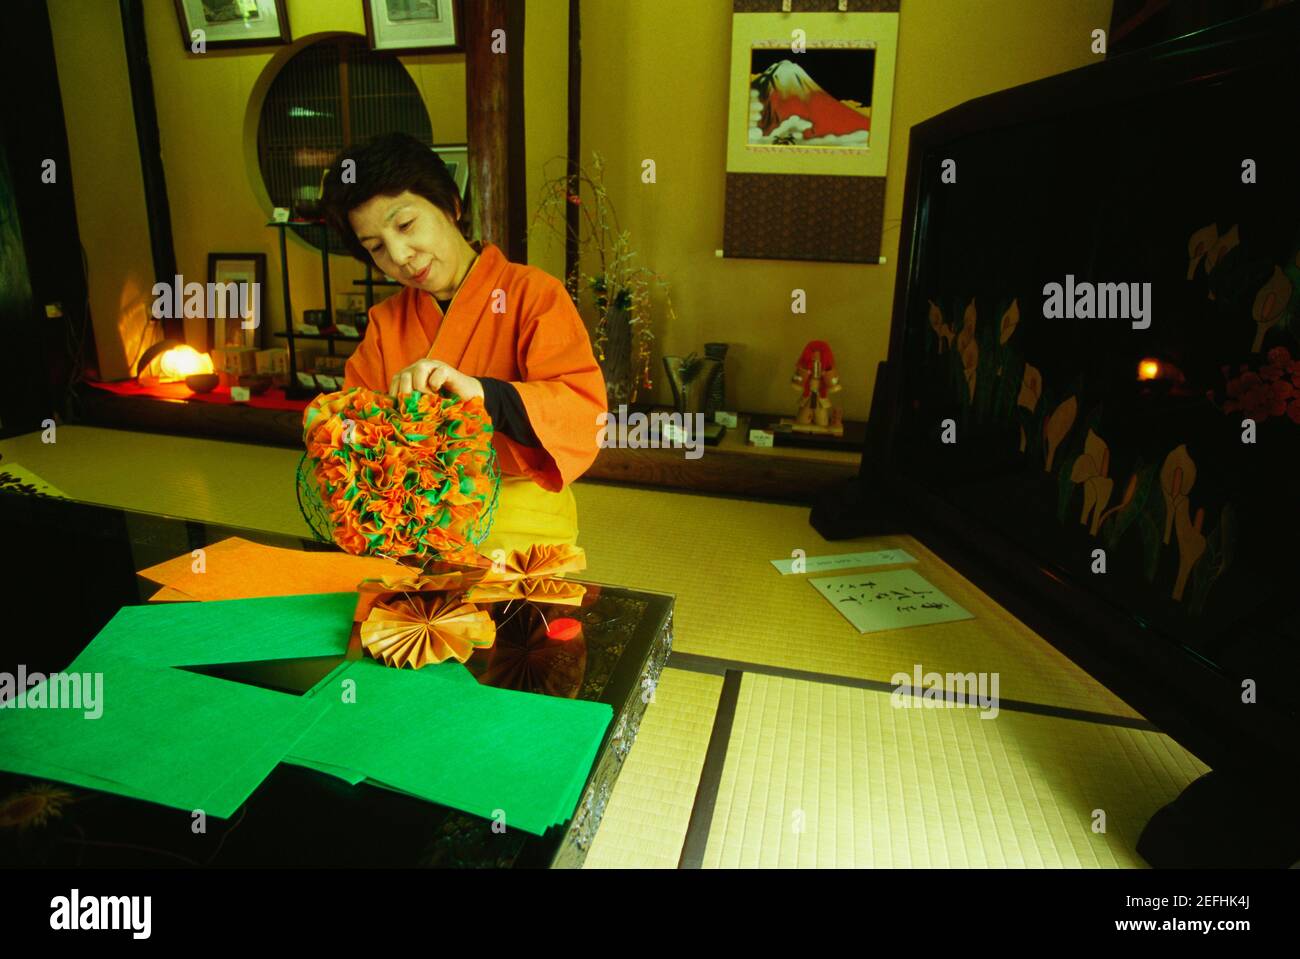 Femme mature qui fabrique des produits artisanaux à partir de papiers, Yunokuni-No-Mori, Komatsu, préfecture d'Ishikawa, Japon Banque D'Images